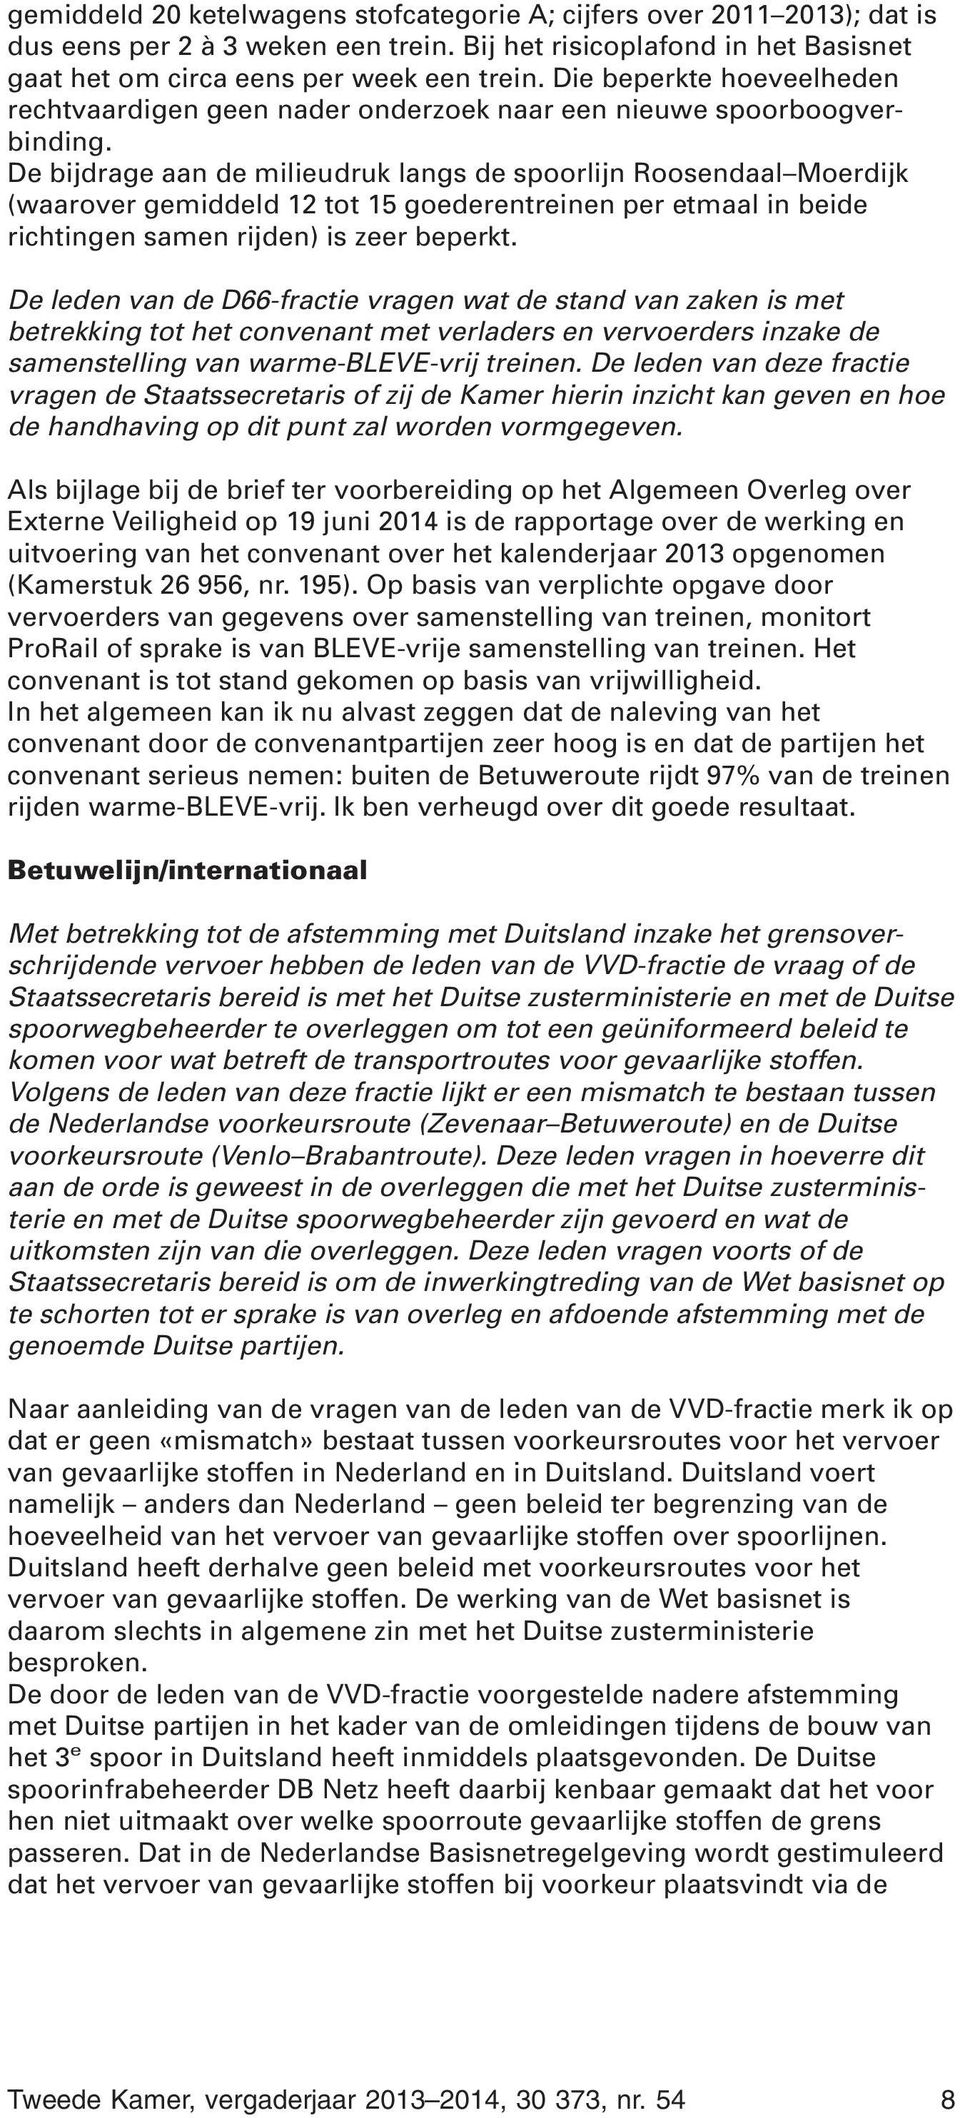 De bijdrage aan de milieudruk langs de spoorlijn Roosendaal Moerdijk (waarover gemiddeld 12 tot 15 goederentreinen per etmaal in beide richtingen samen rijden) is zeer beperkt.